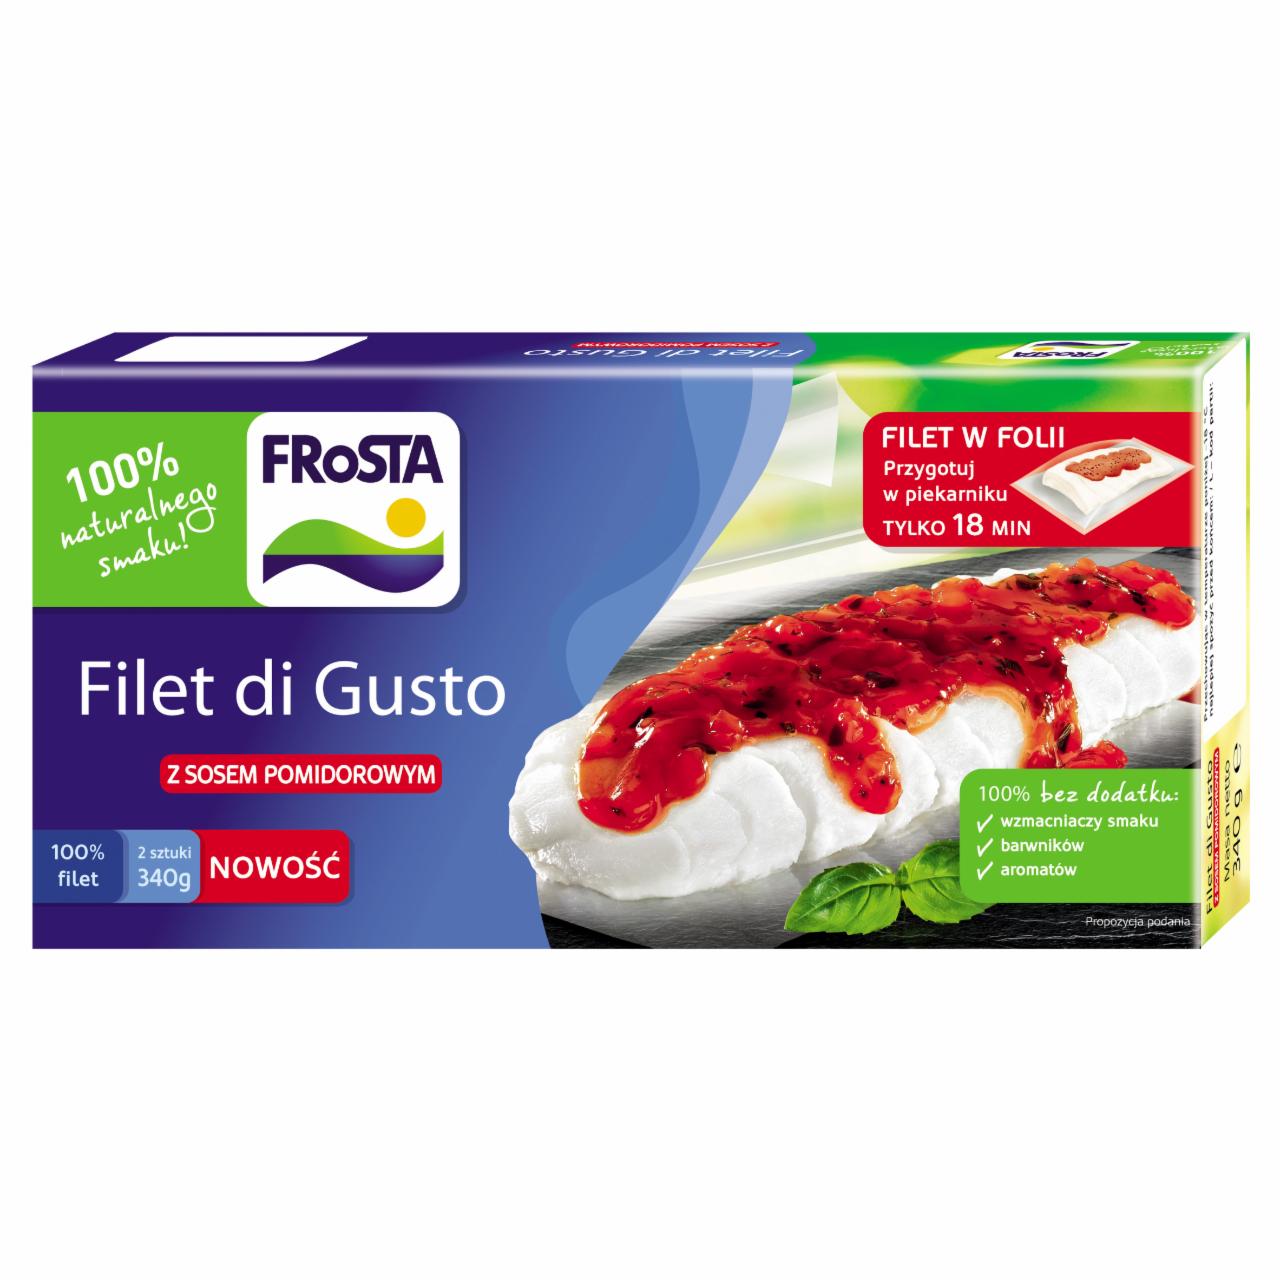 Zdjęcia - FRoSTA Filet di Gusto z sosem pomidorowym 340 g (2 sztuki)